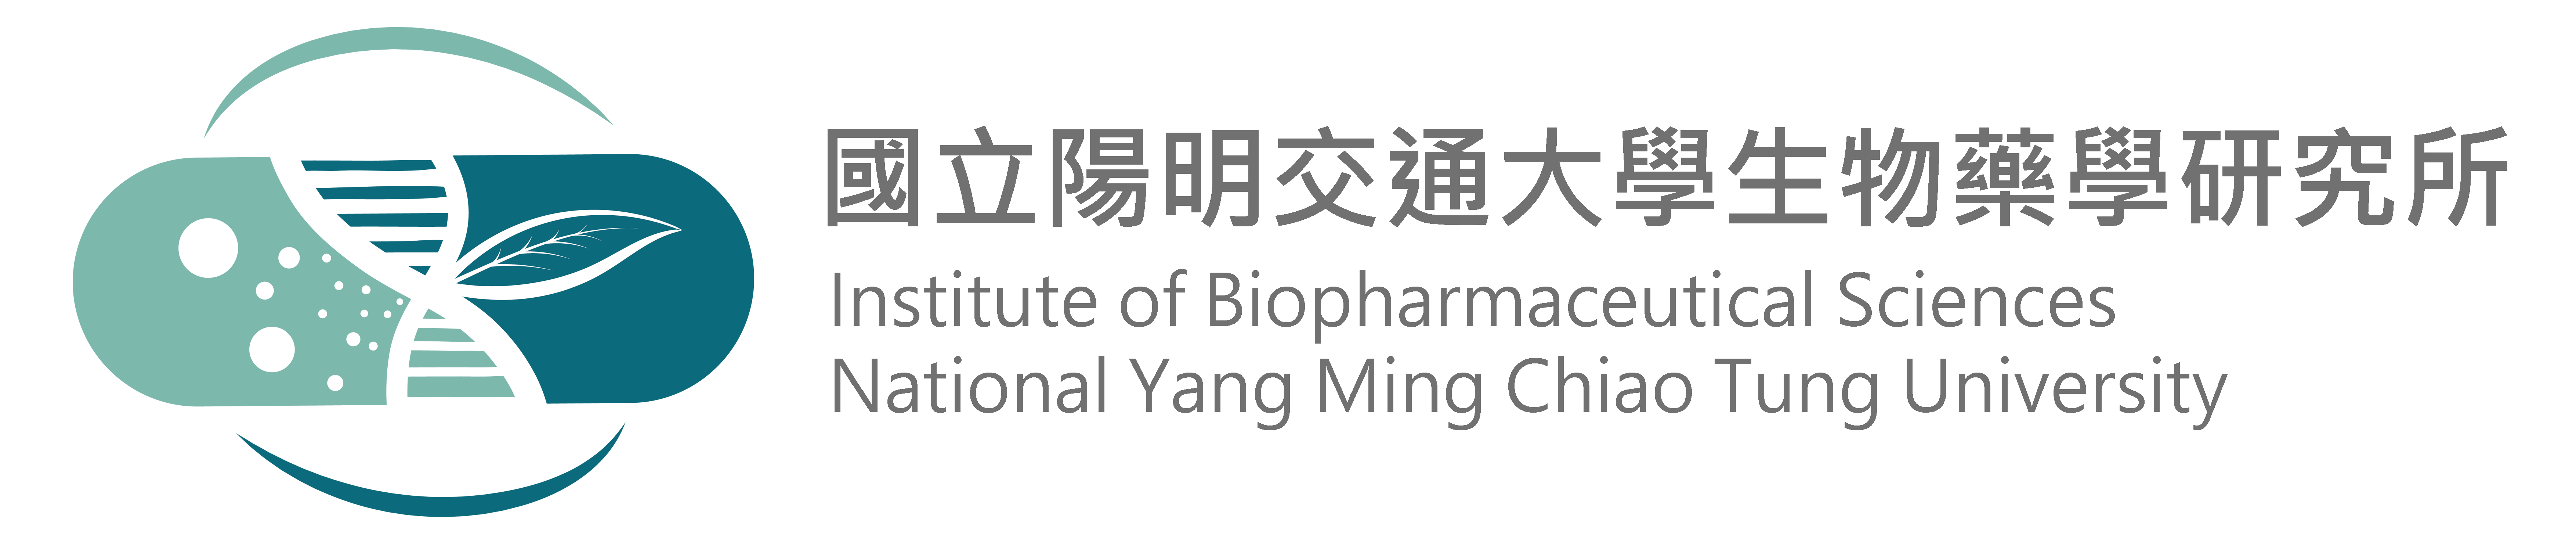 Institute of Biopharmaceutical Sciences, College of Pharmaceutical Sciences, National Yang Ming Chiao Tung University